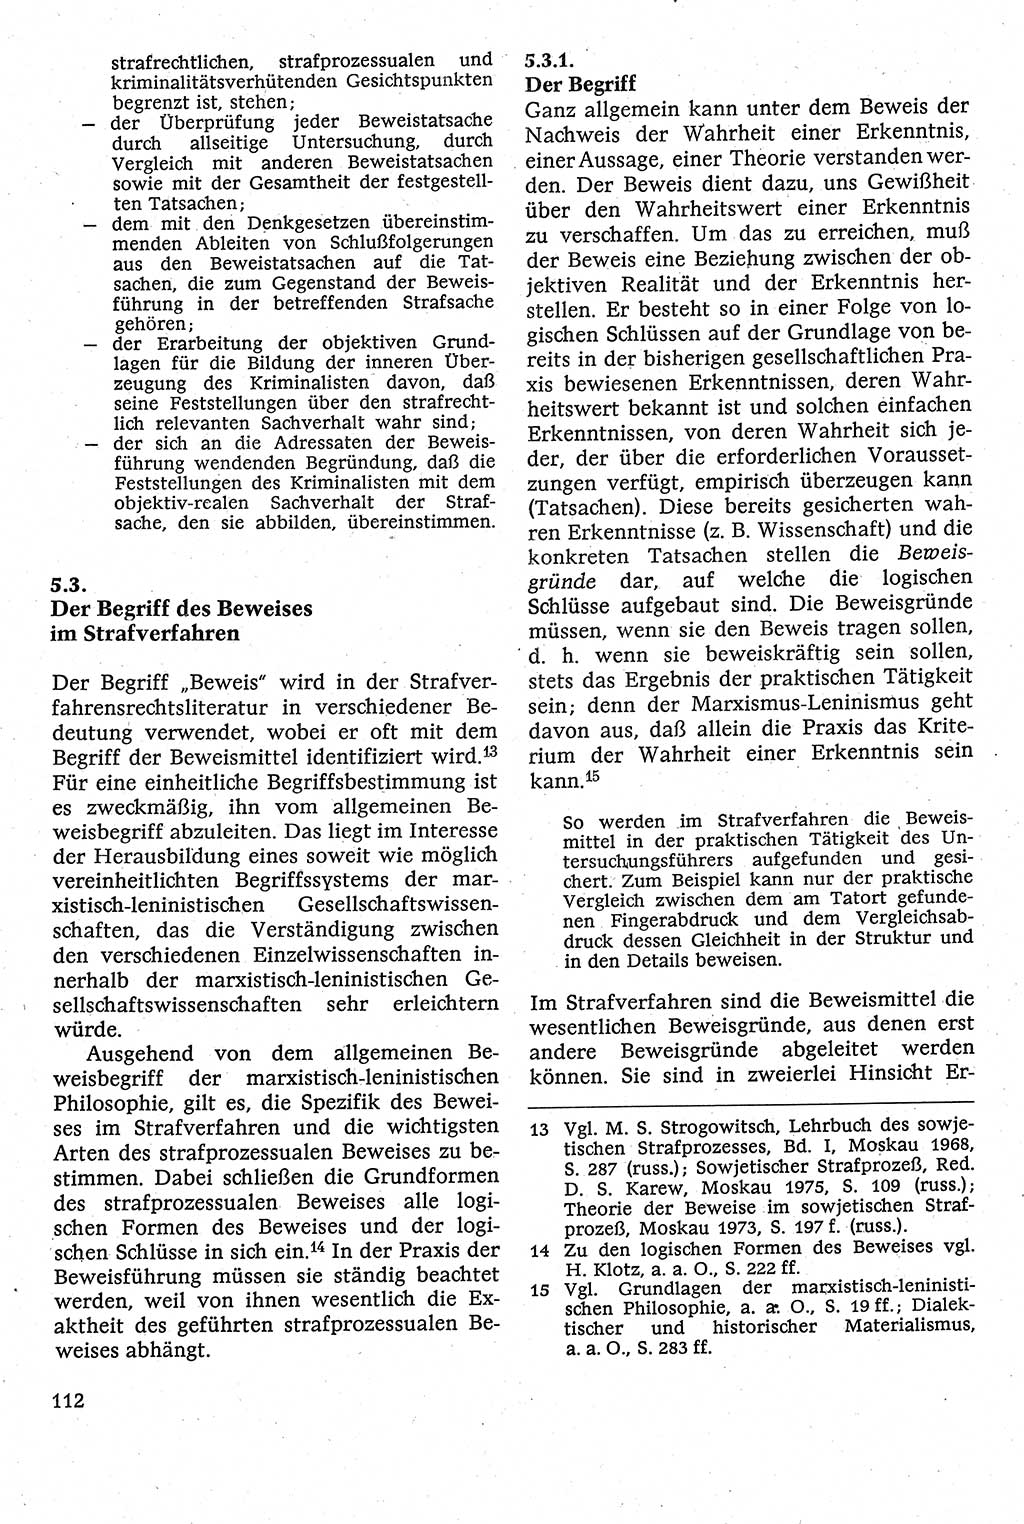 Strafverfahrensrecht [Deutsche Demokratische Republik (DDR)], Lehrbuch 1982, Seite 112 (Strafverf.-R. DDR Lb. 1982, S. 112)